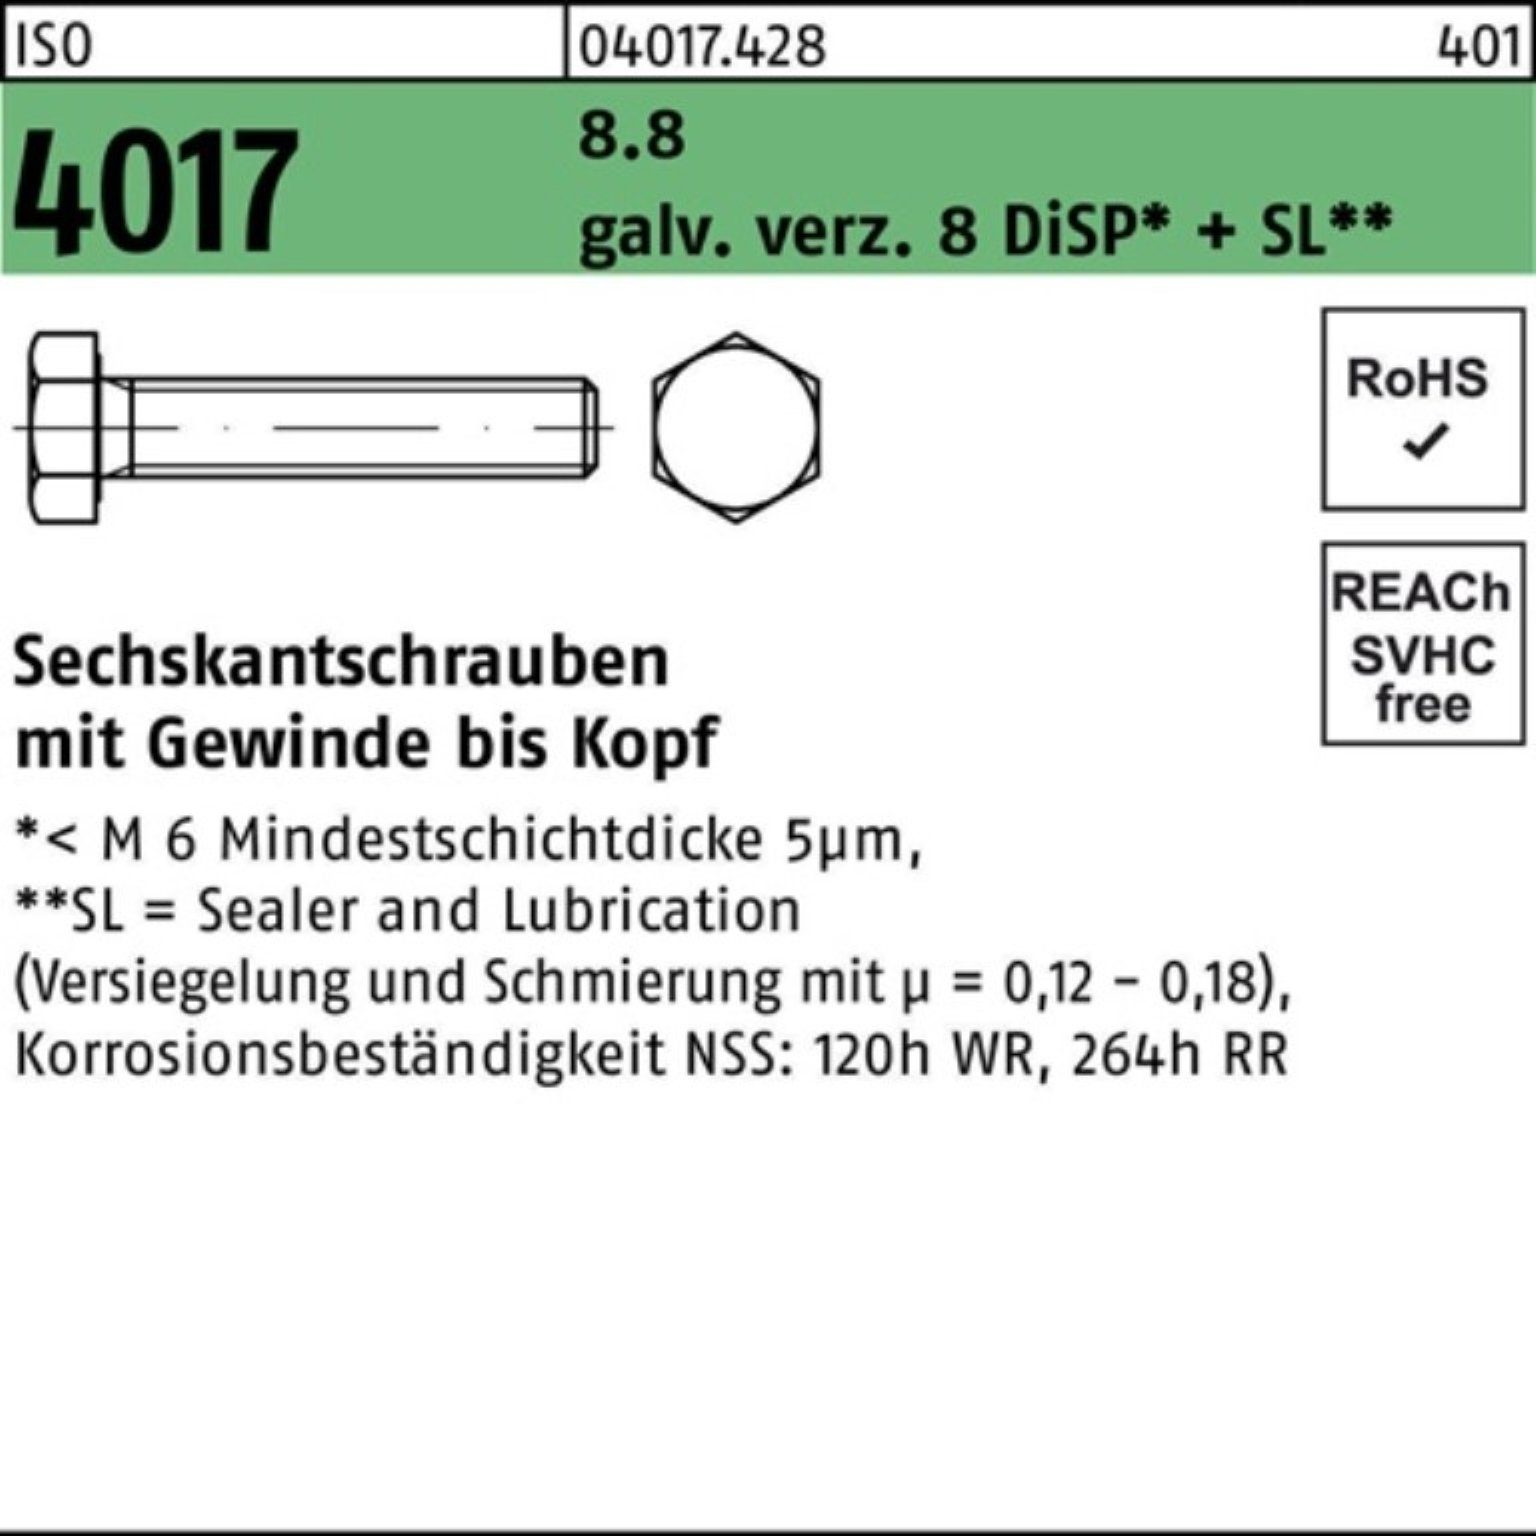 Bufab Sechskantschraube 500er 4017 VG 8 20 DiSP+ M3x Sechskantschraube Pack 8.8 ISO galv.verz